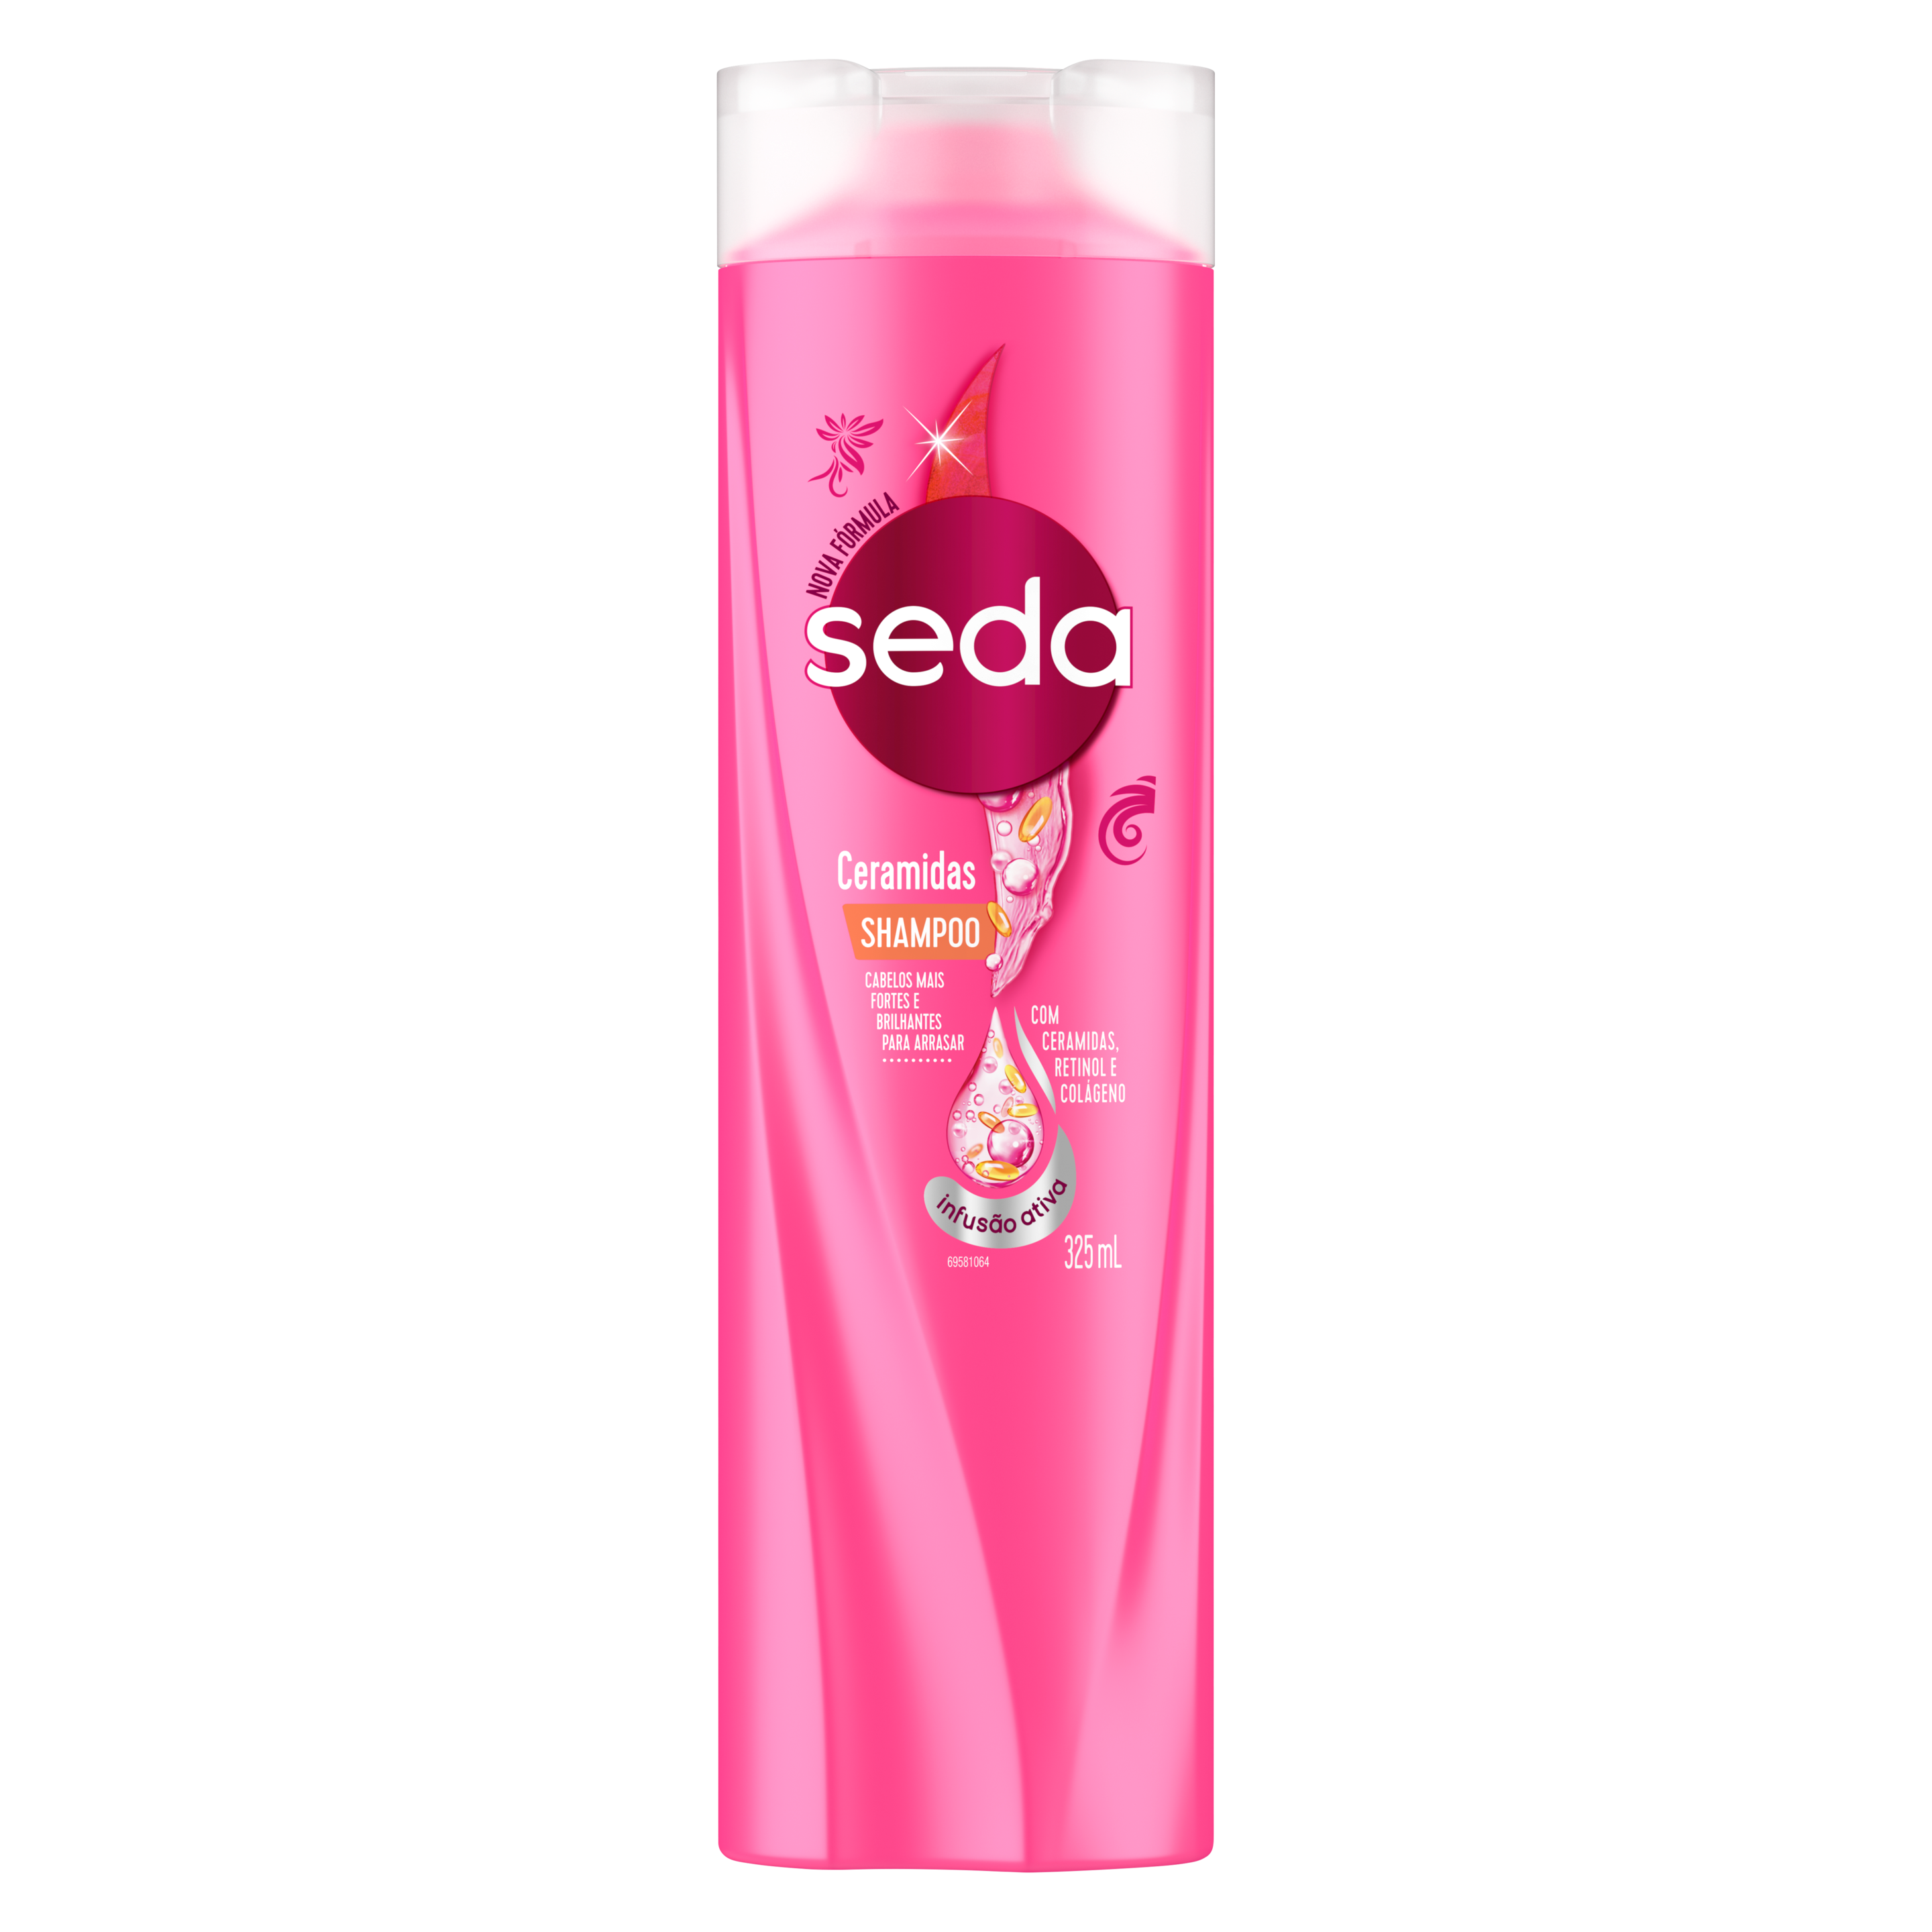 Uma imagem frontal da embalagem de Shampoo Seda Ceramidas 325ml